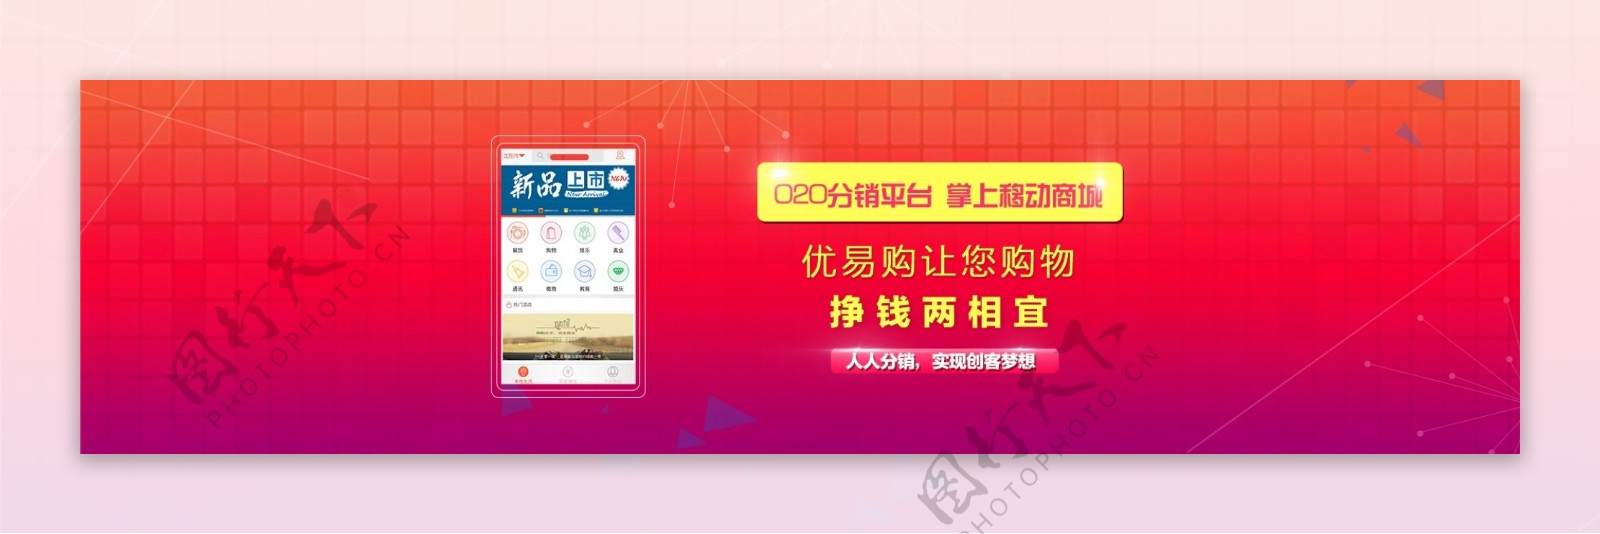 网页海报banner优易购o2o平台